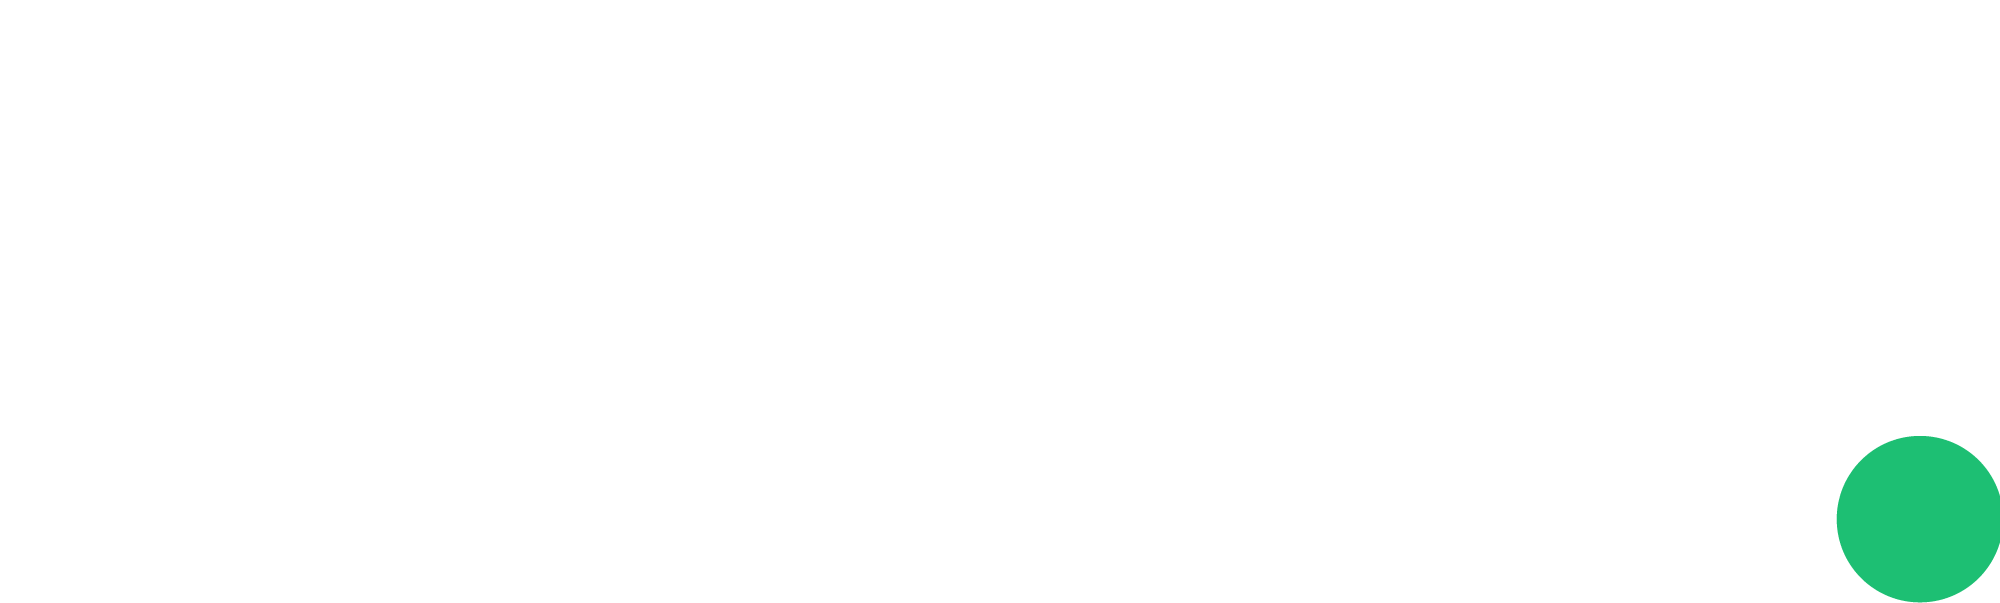 Fiverr PNG Logo title=